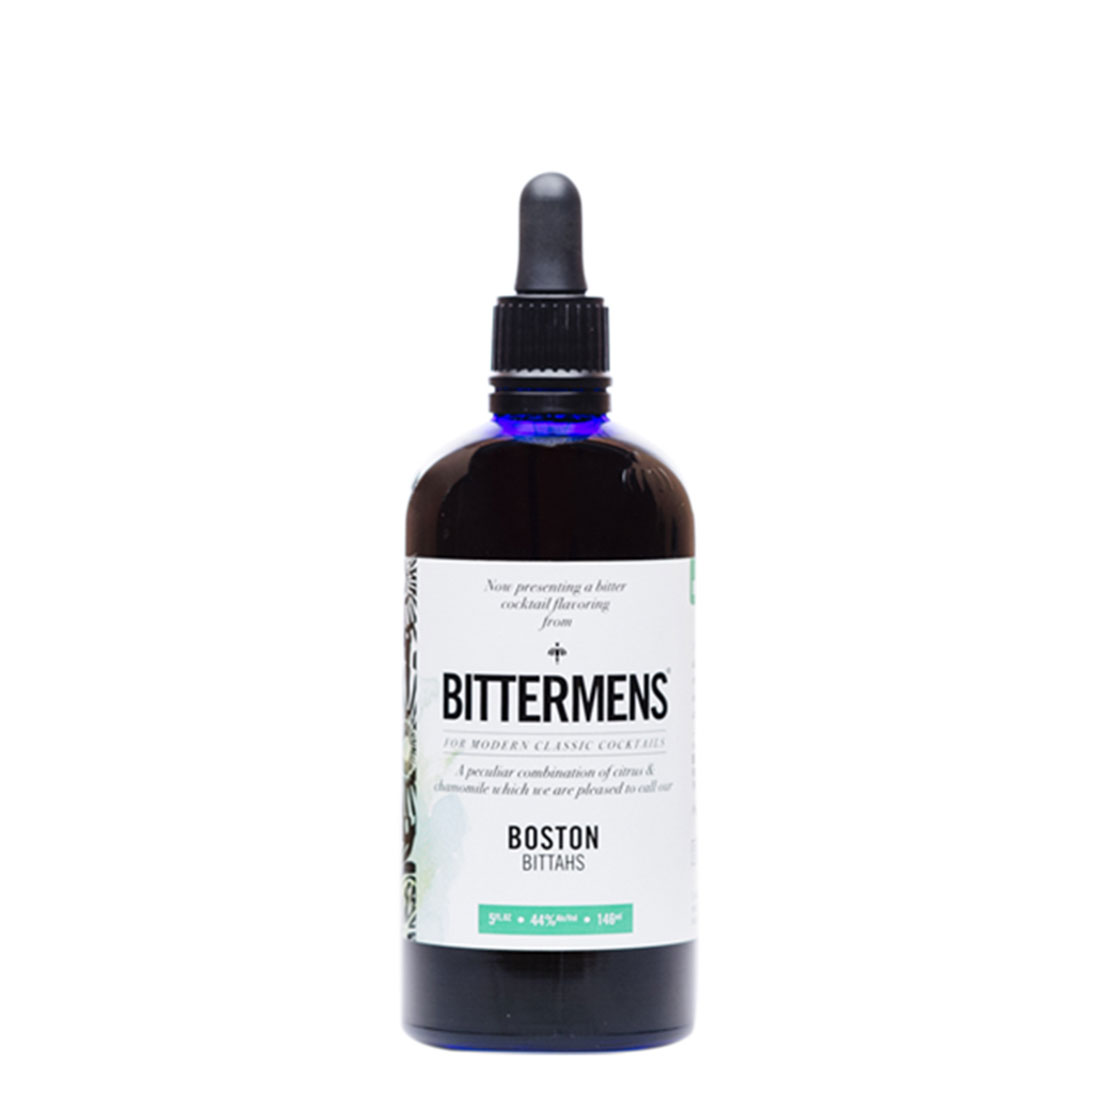 LB_Bottle-Bittermens-Boston-Bittahs